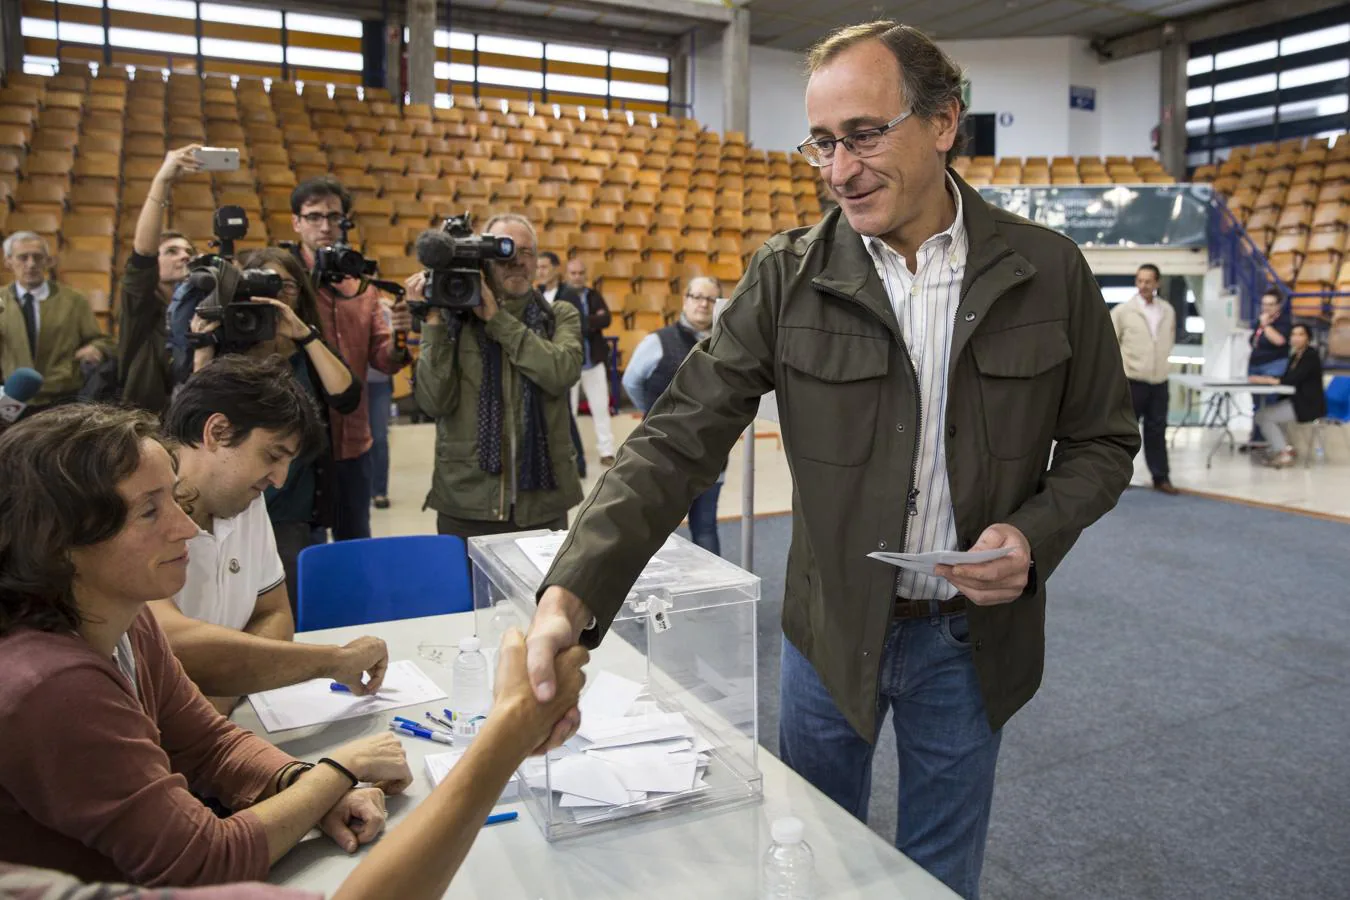 El candidato Alfonso Alonso se dispone a votar en el colegio electoral situado en el polideportivo Mendizorrotza de Vitoria